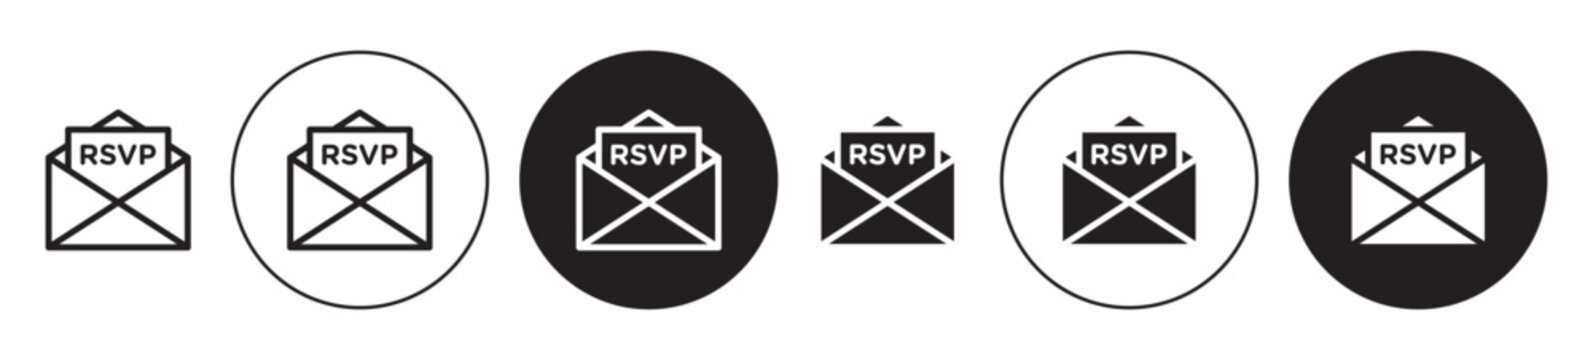 RSVP (Répondez s'il vous plaît) icon set. reply email vector symbol in black color.